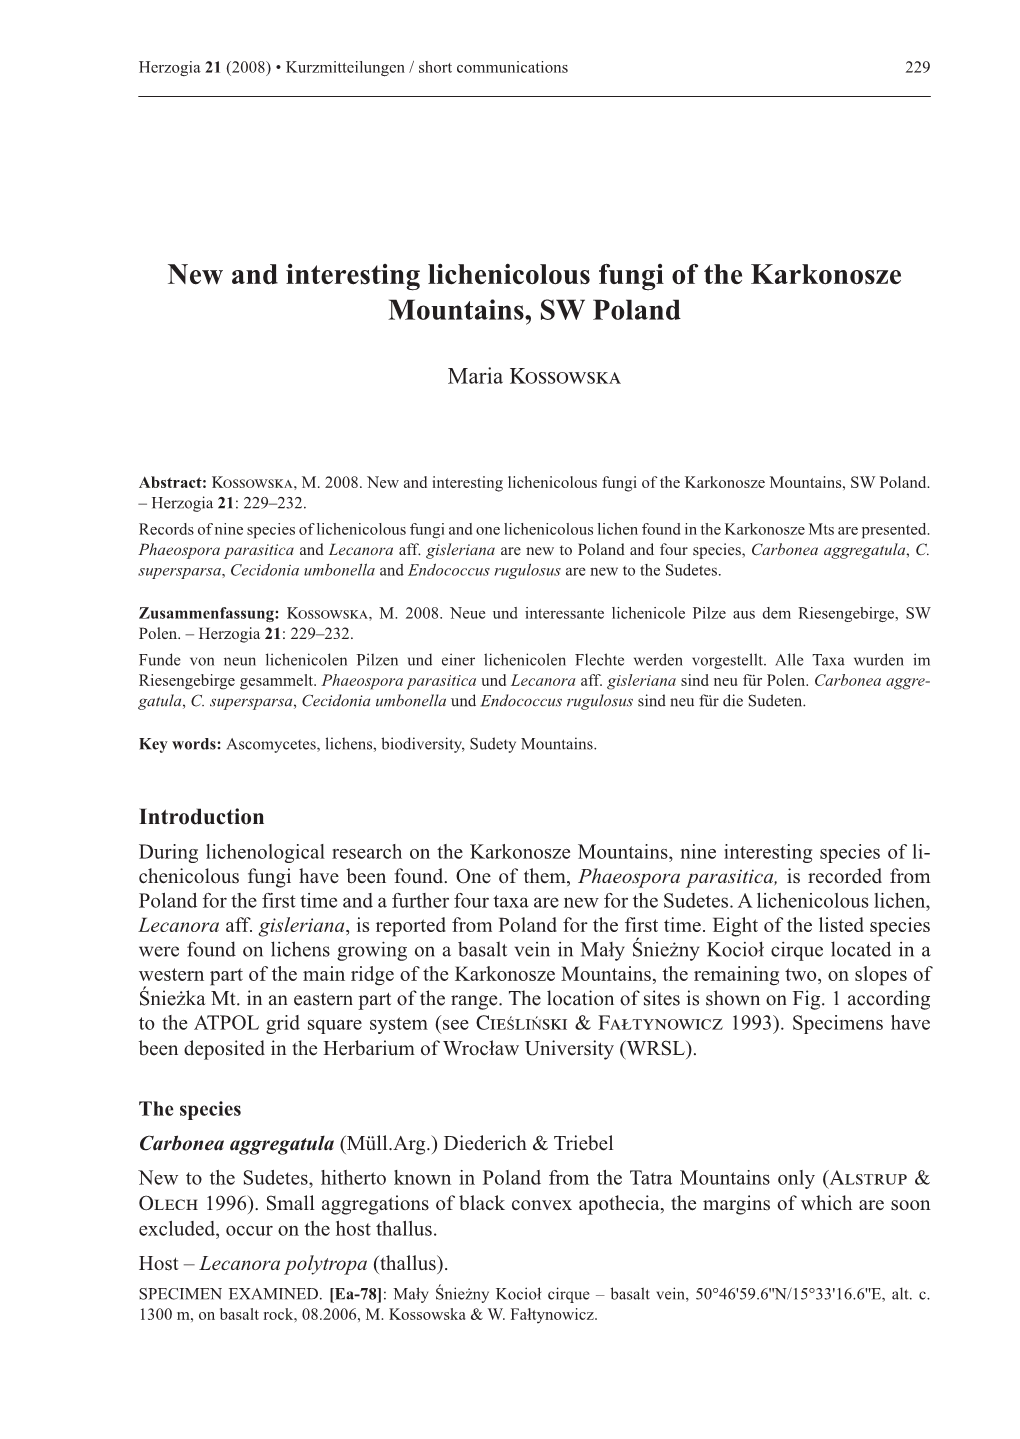 New and Interesting Lichenicolous Fungi of the Karkonosze Mountains, SW Poland